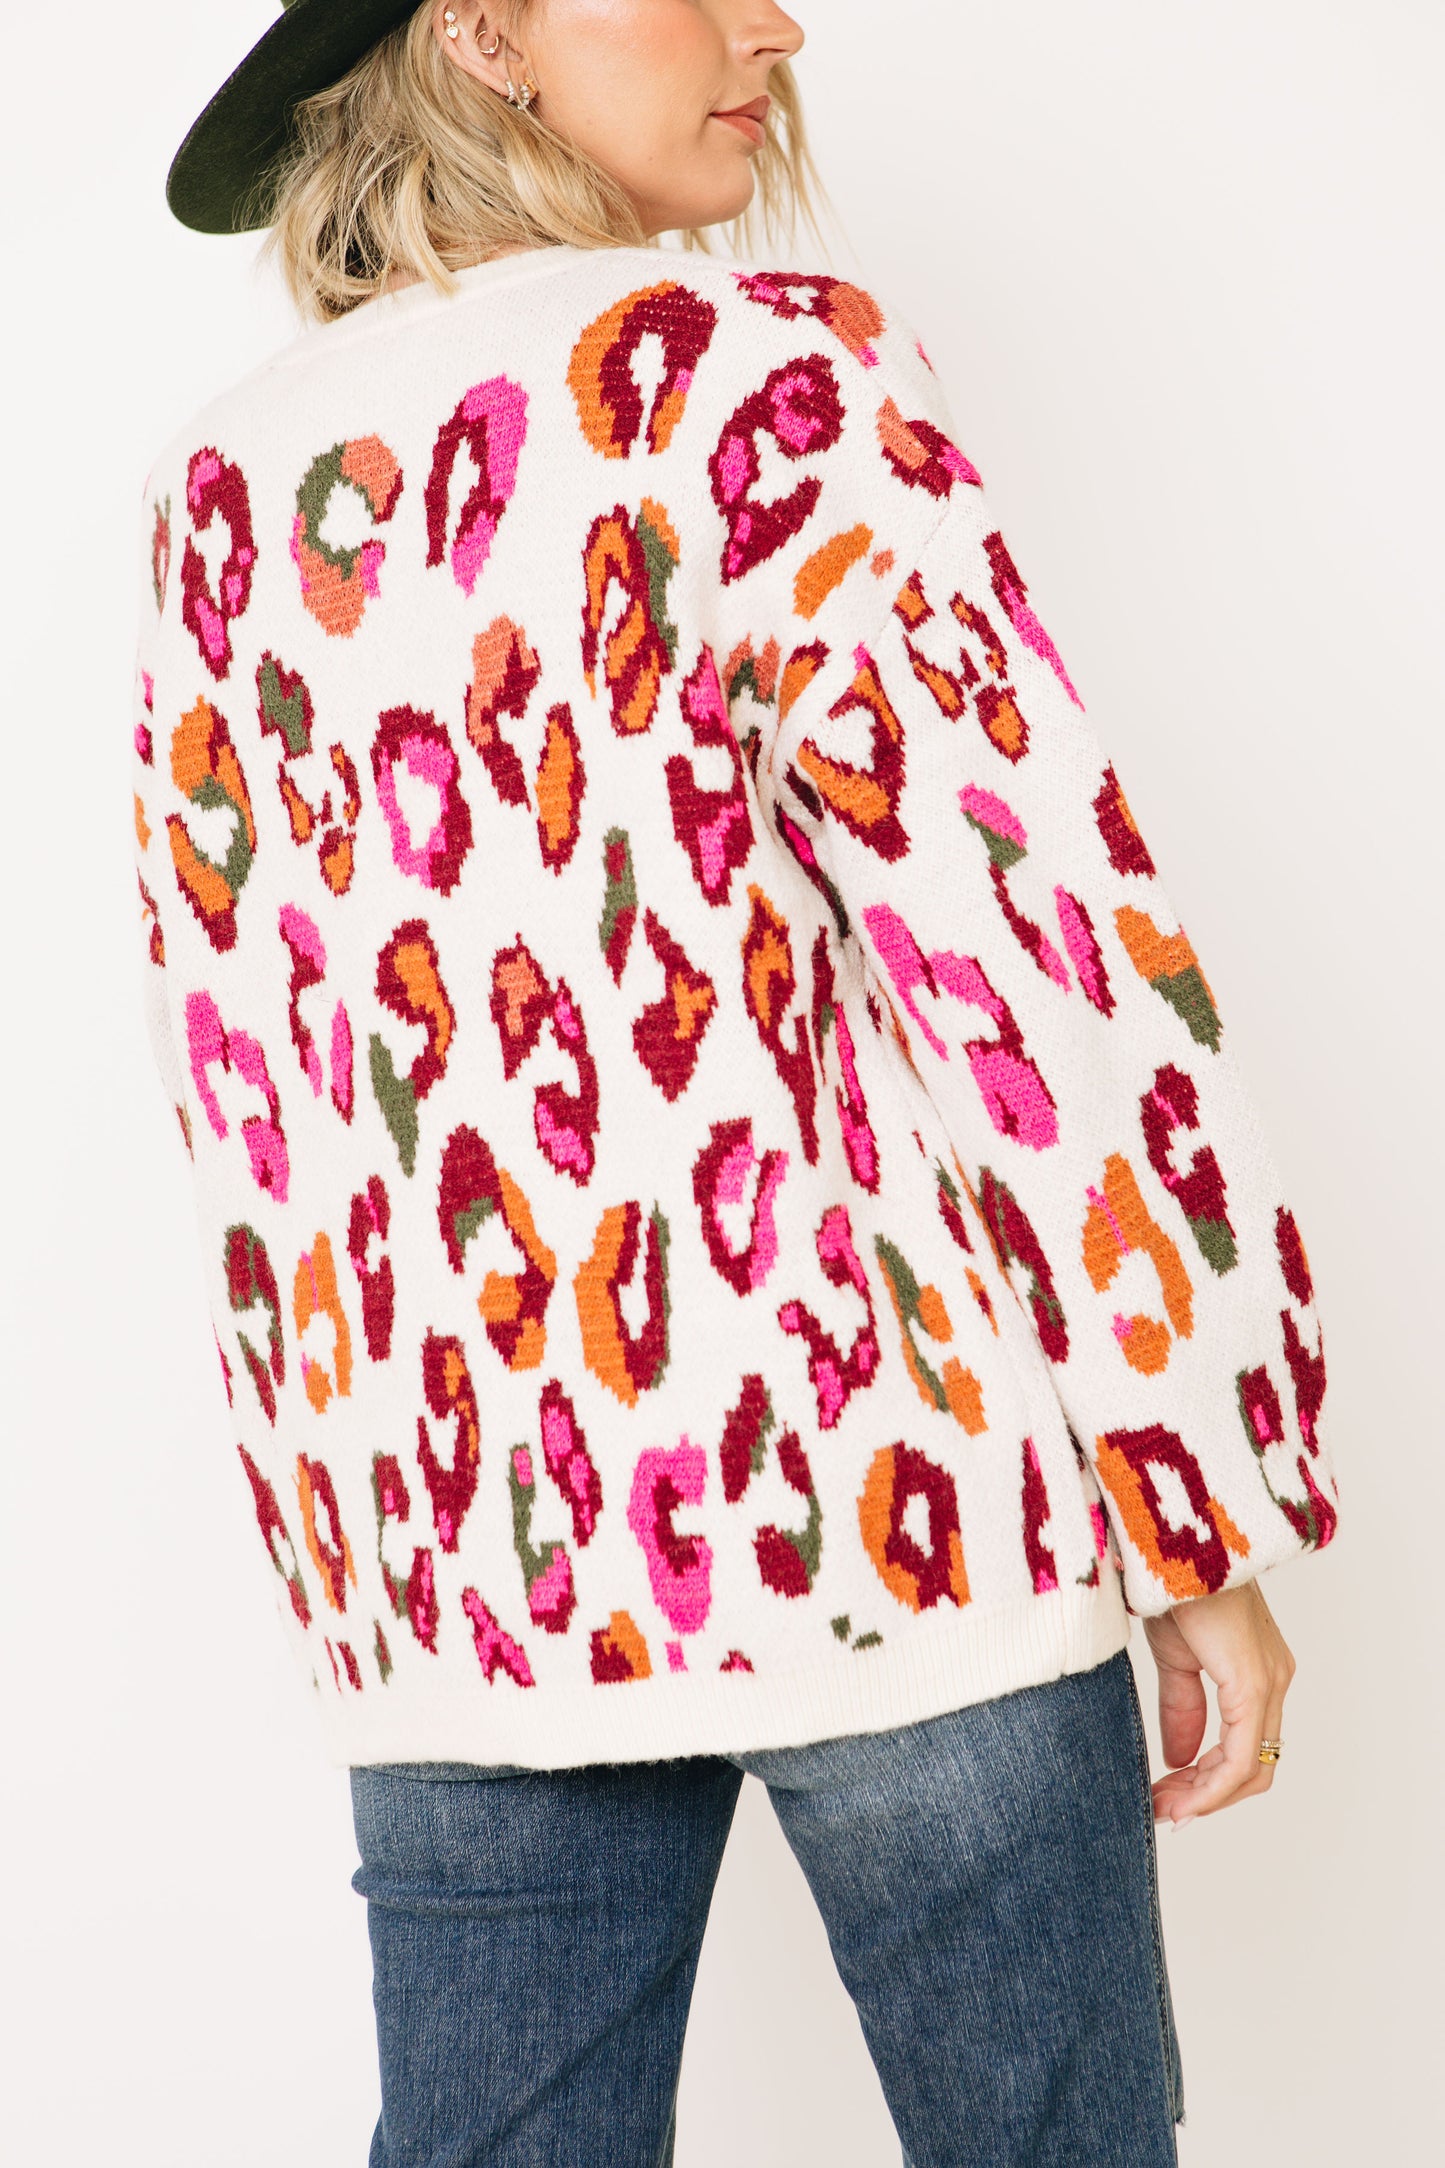 Wild Leopard print Sweater (S-L)